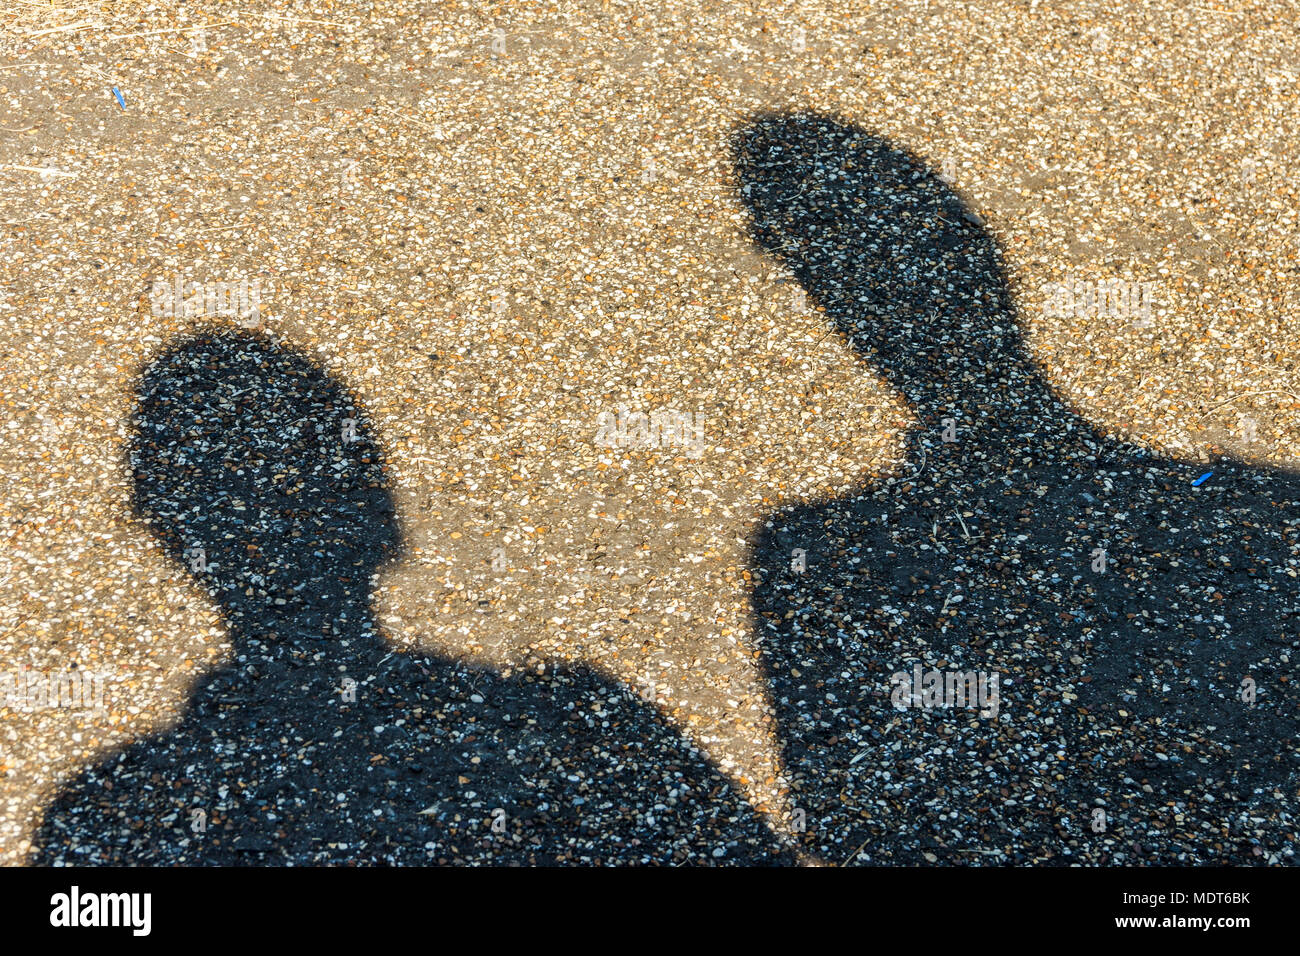 Cabeza y hombros las sombras de dos personas (posiblemente para adulto y niño) emitidos al lado de un camino de gravilla amarillo Foto de stock